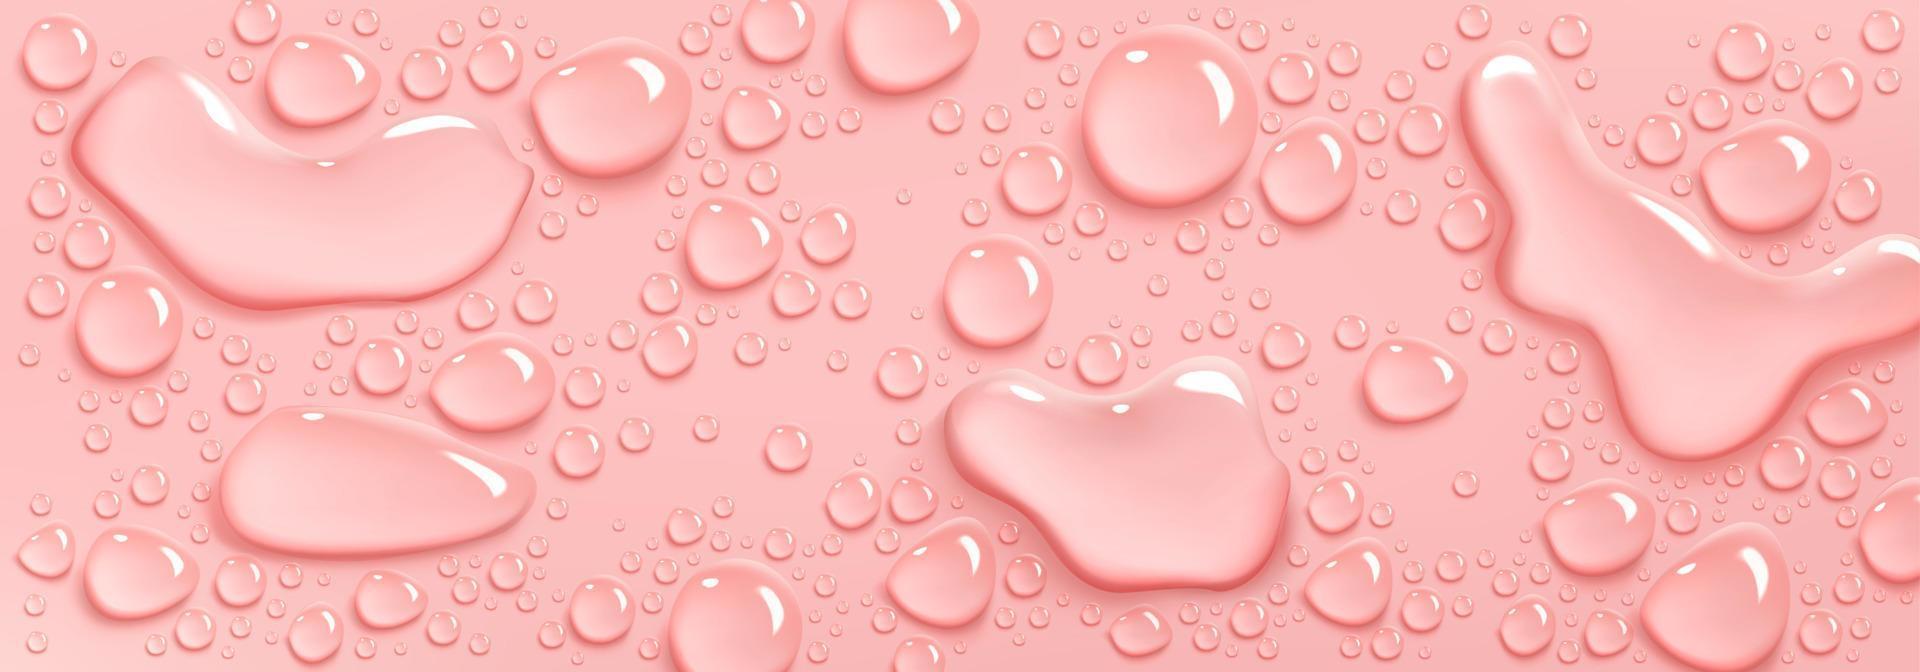 Kollagen oder Wassertropfen auf rosa Hintergrund, Schönheit vektor